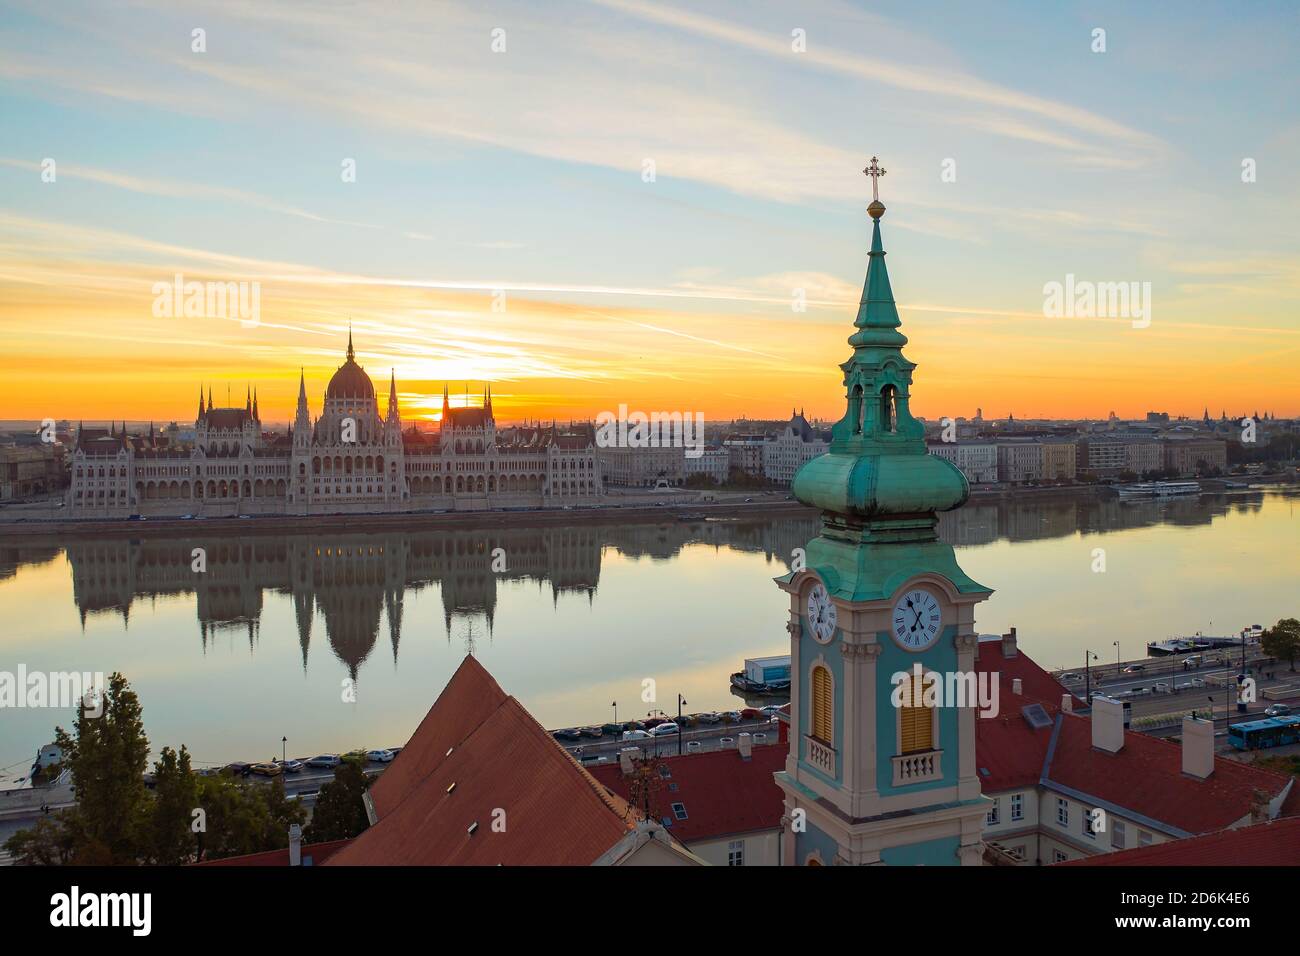 Erstaunliches unuique Luftbild über das ungarische Parlamentsgebäude. Wunderschöne Morgenlichter. Stockfoto